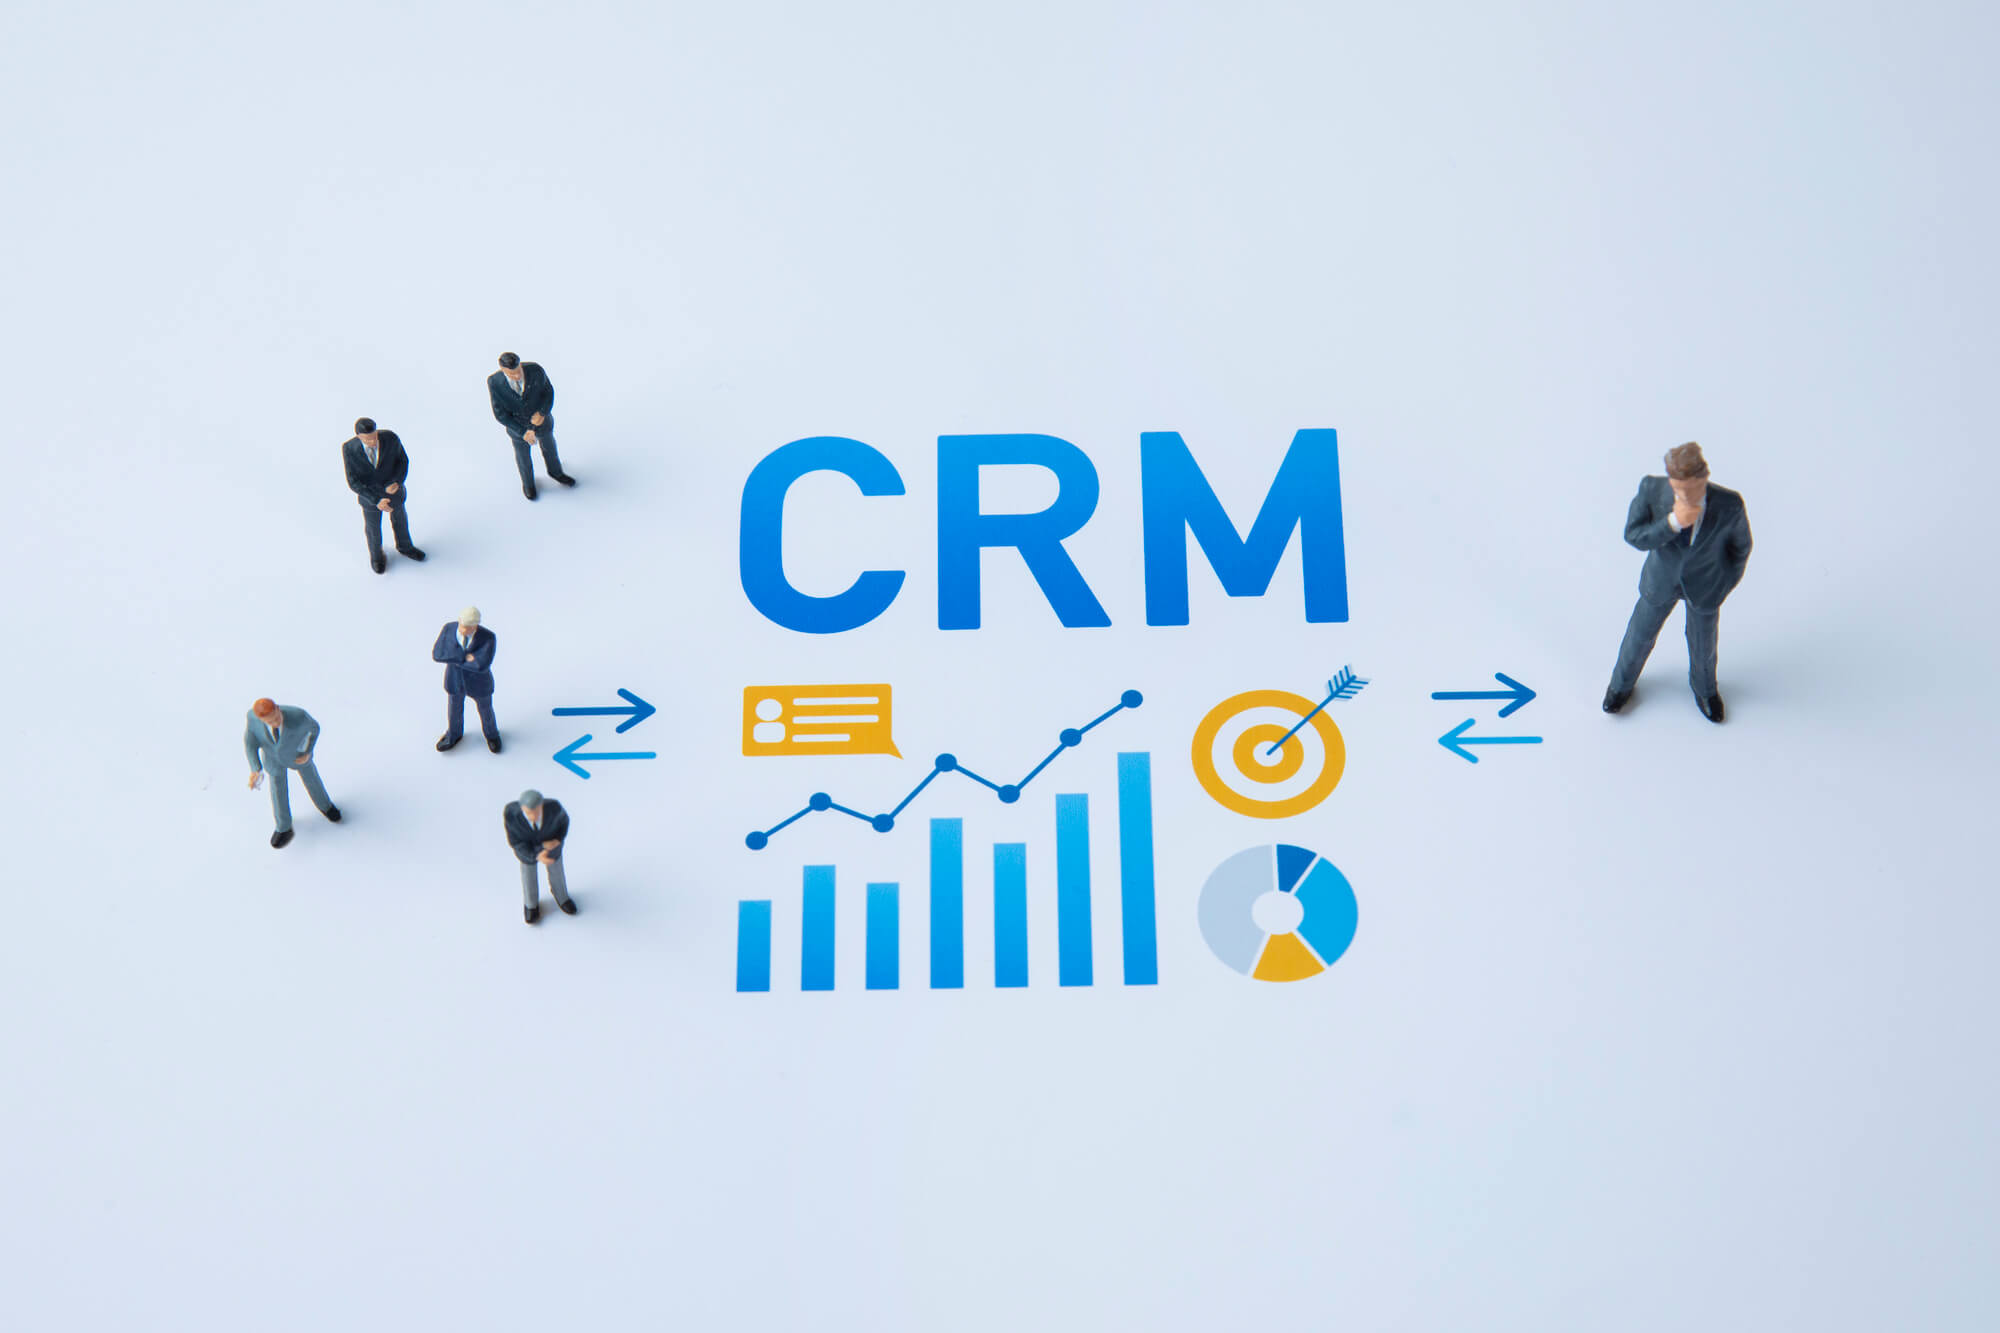 CRMとは「顧客関係管理」